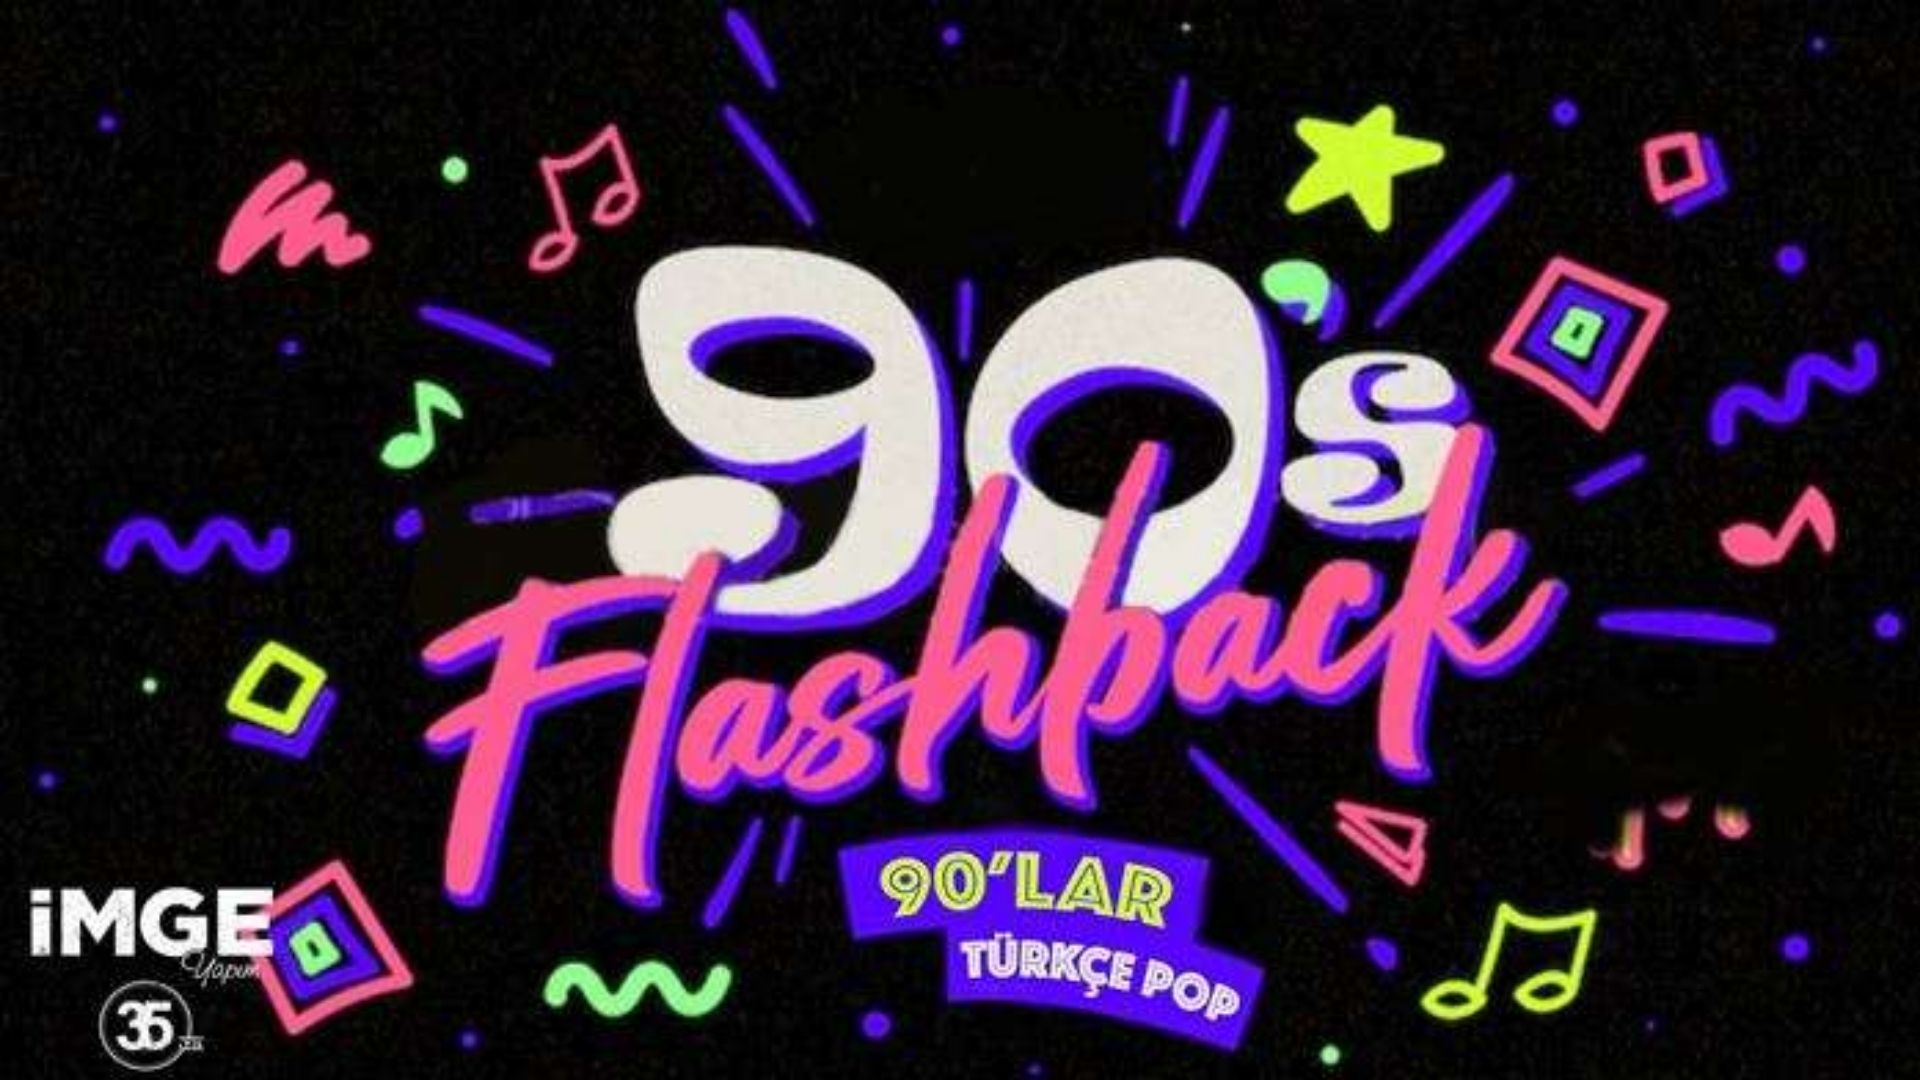 Flashback 90'lar Türkçe Pop Gecesi parti